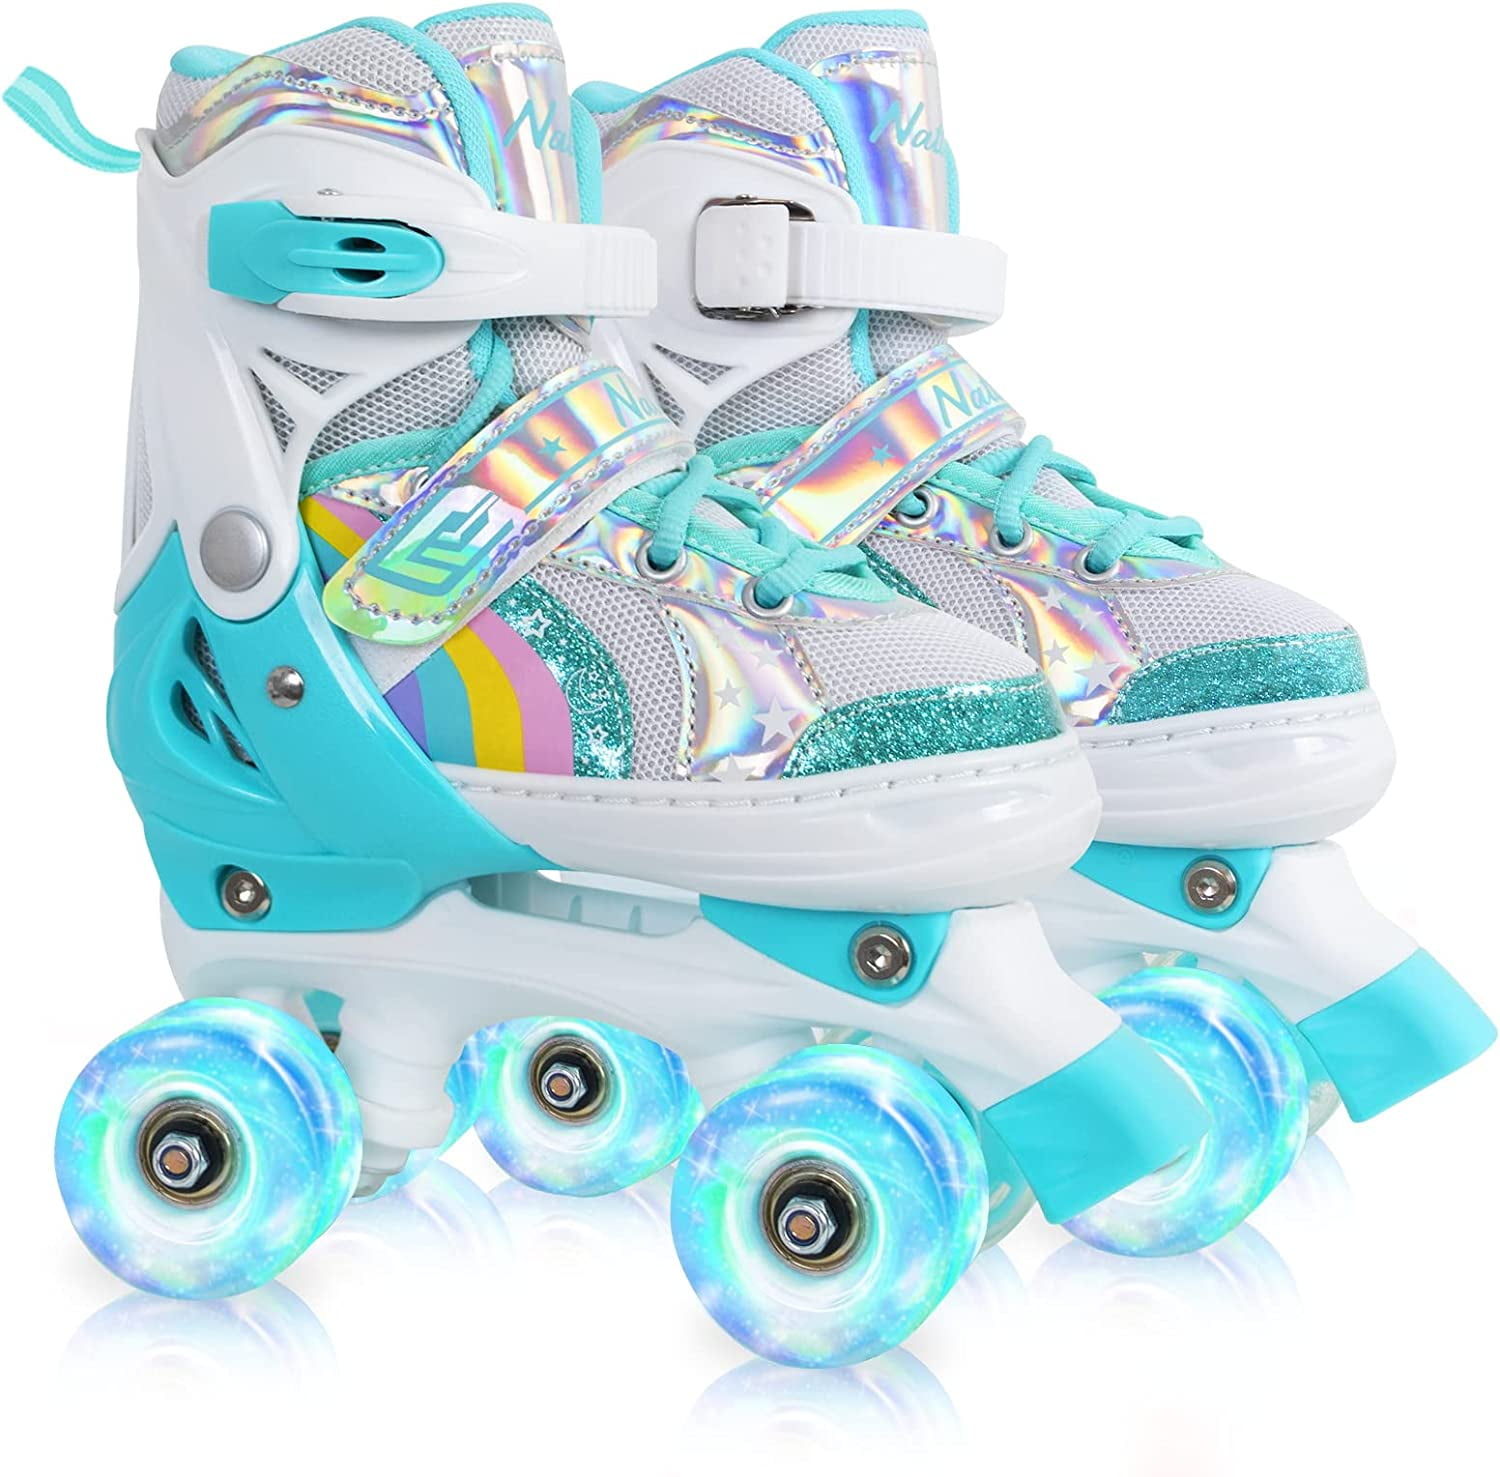 Roller Skates for Boys Kids Blue – NattorkSkates